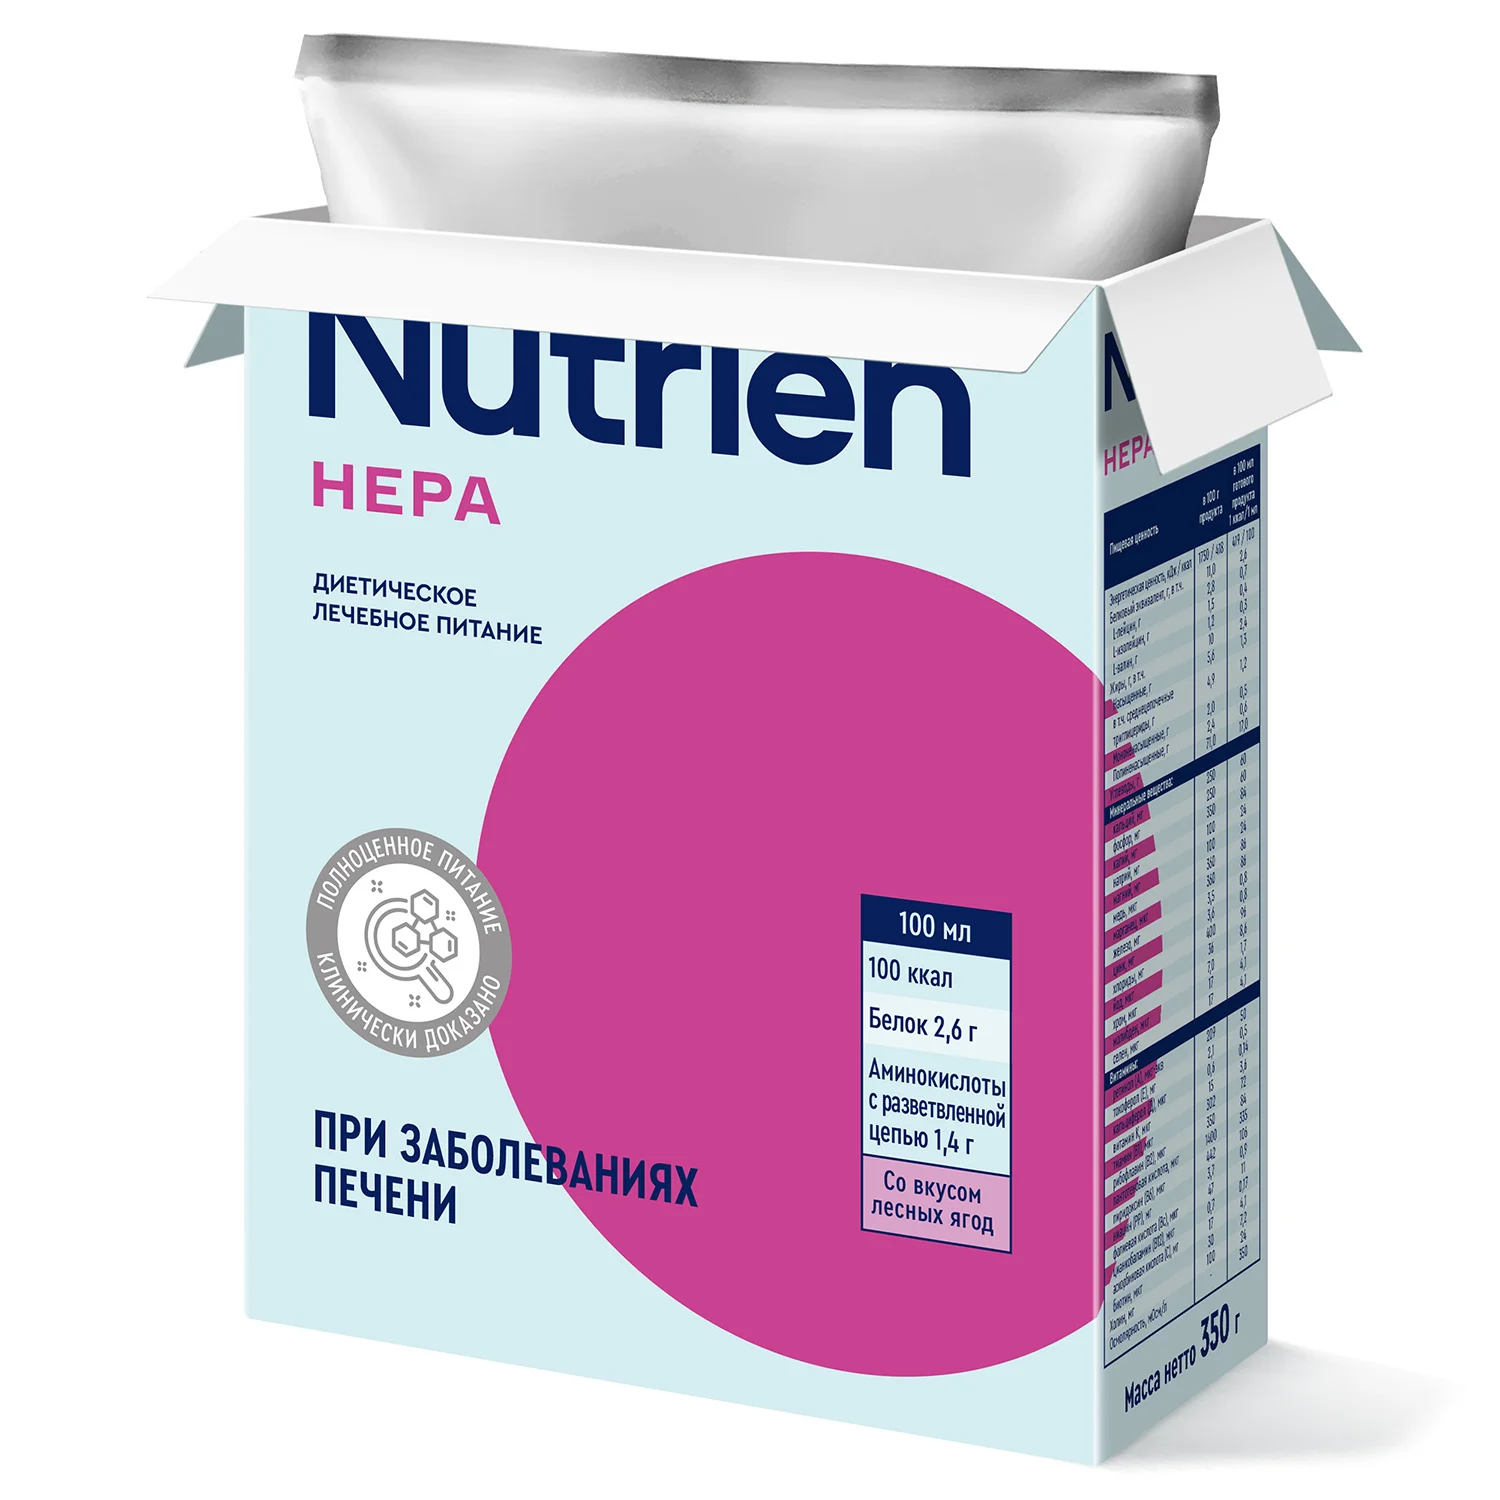 Nutrien Hepa - 4